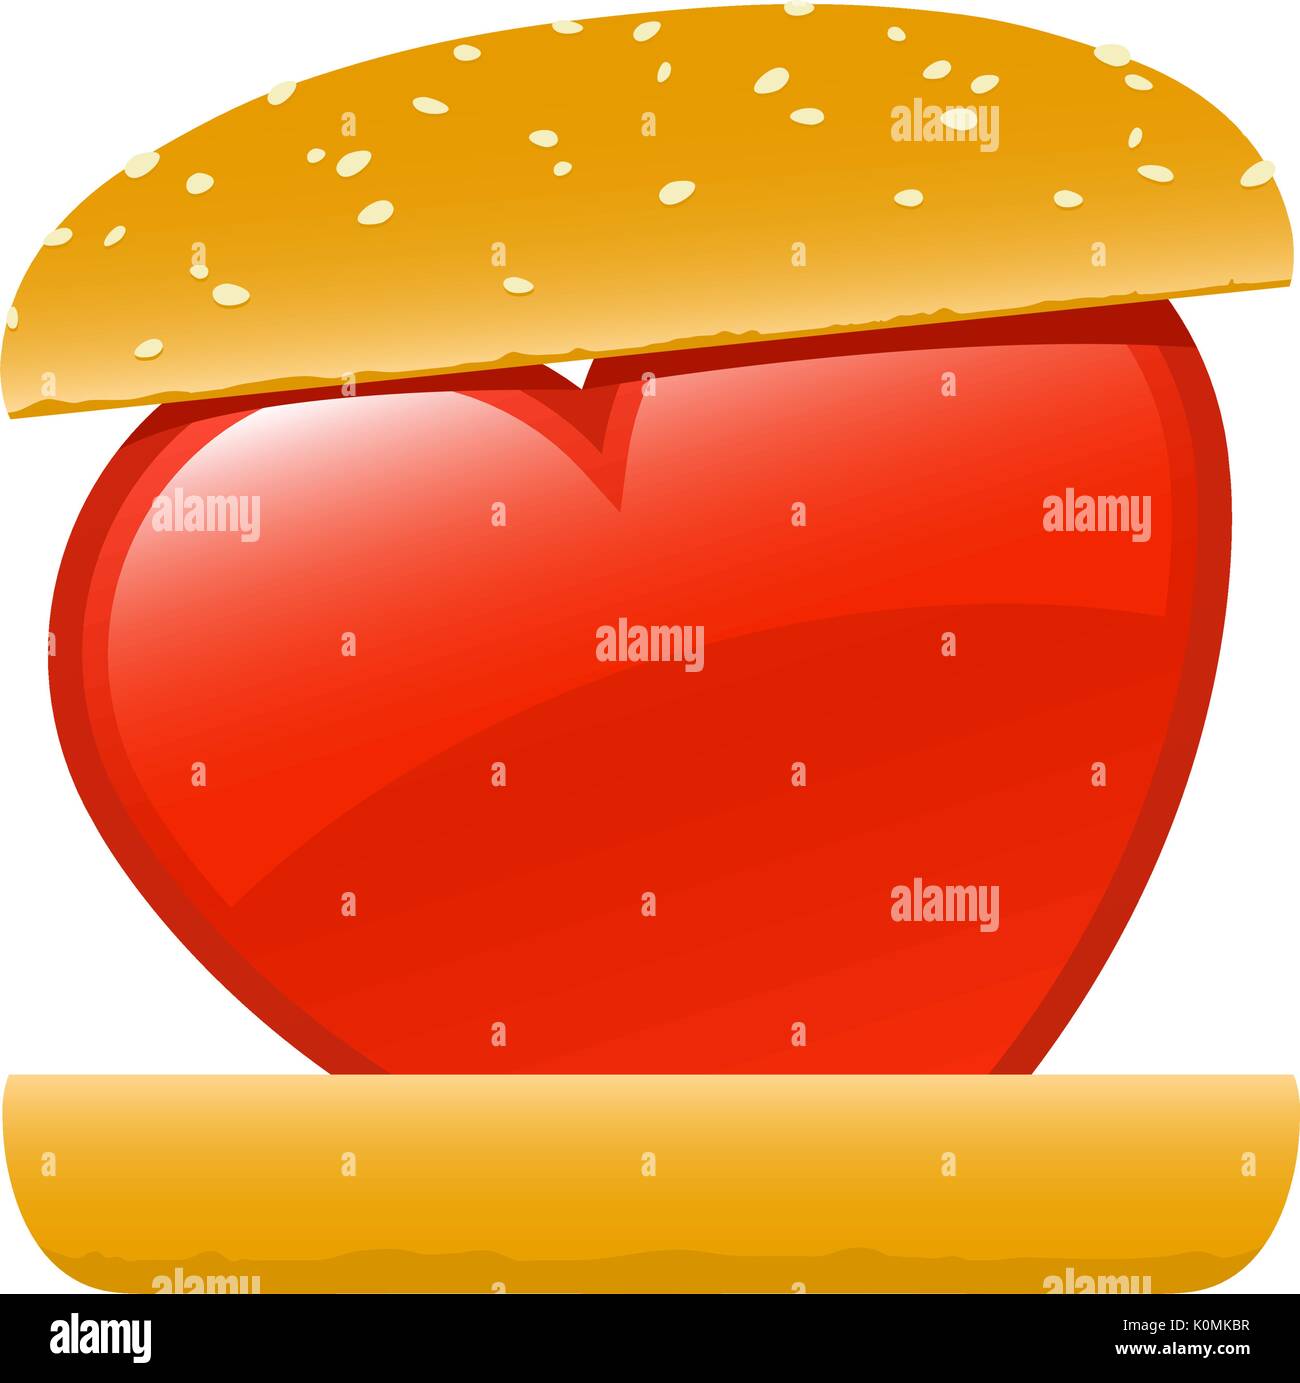 El amor del Corazón de comida rápida hamburguesa ilustración Ilustración del Vector